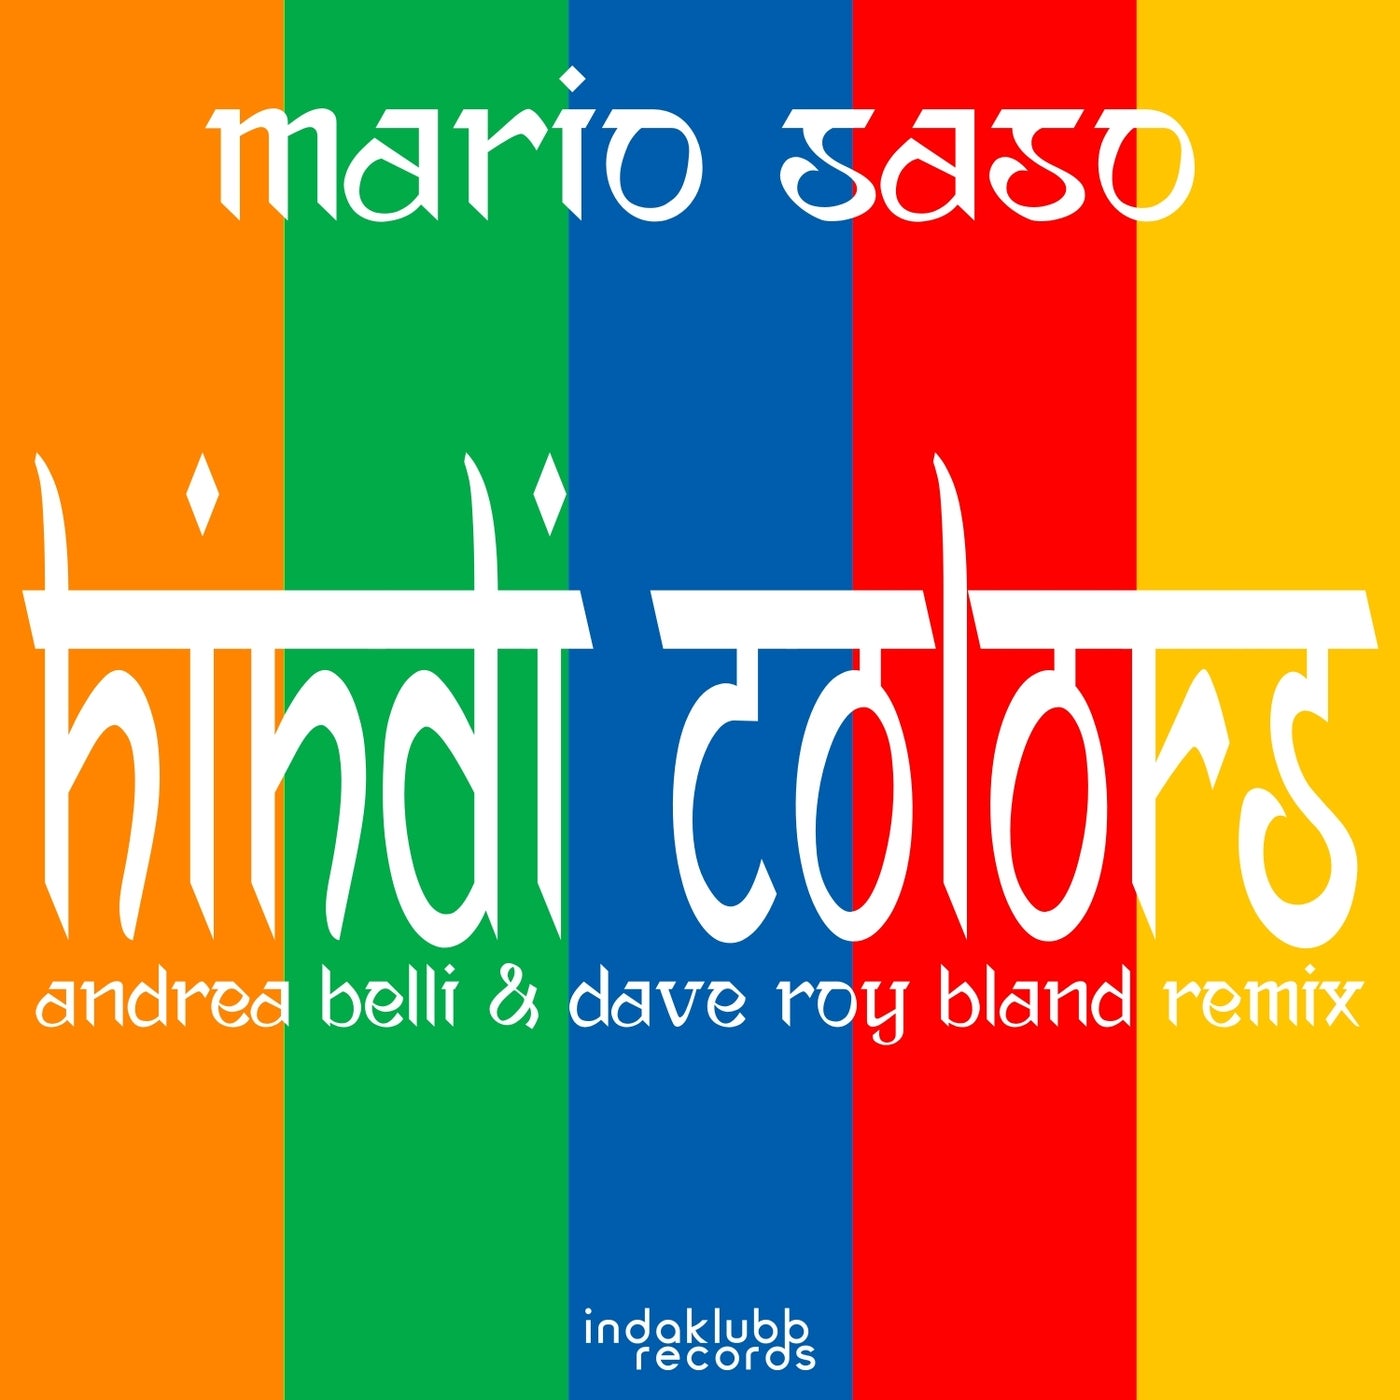 Hindi Colors